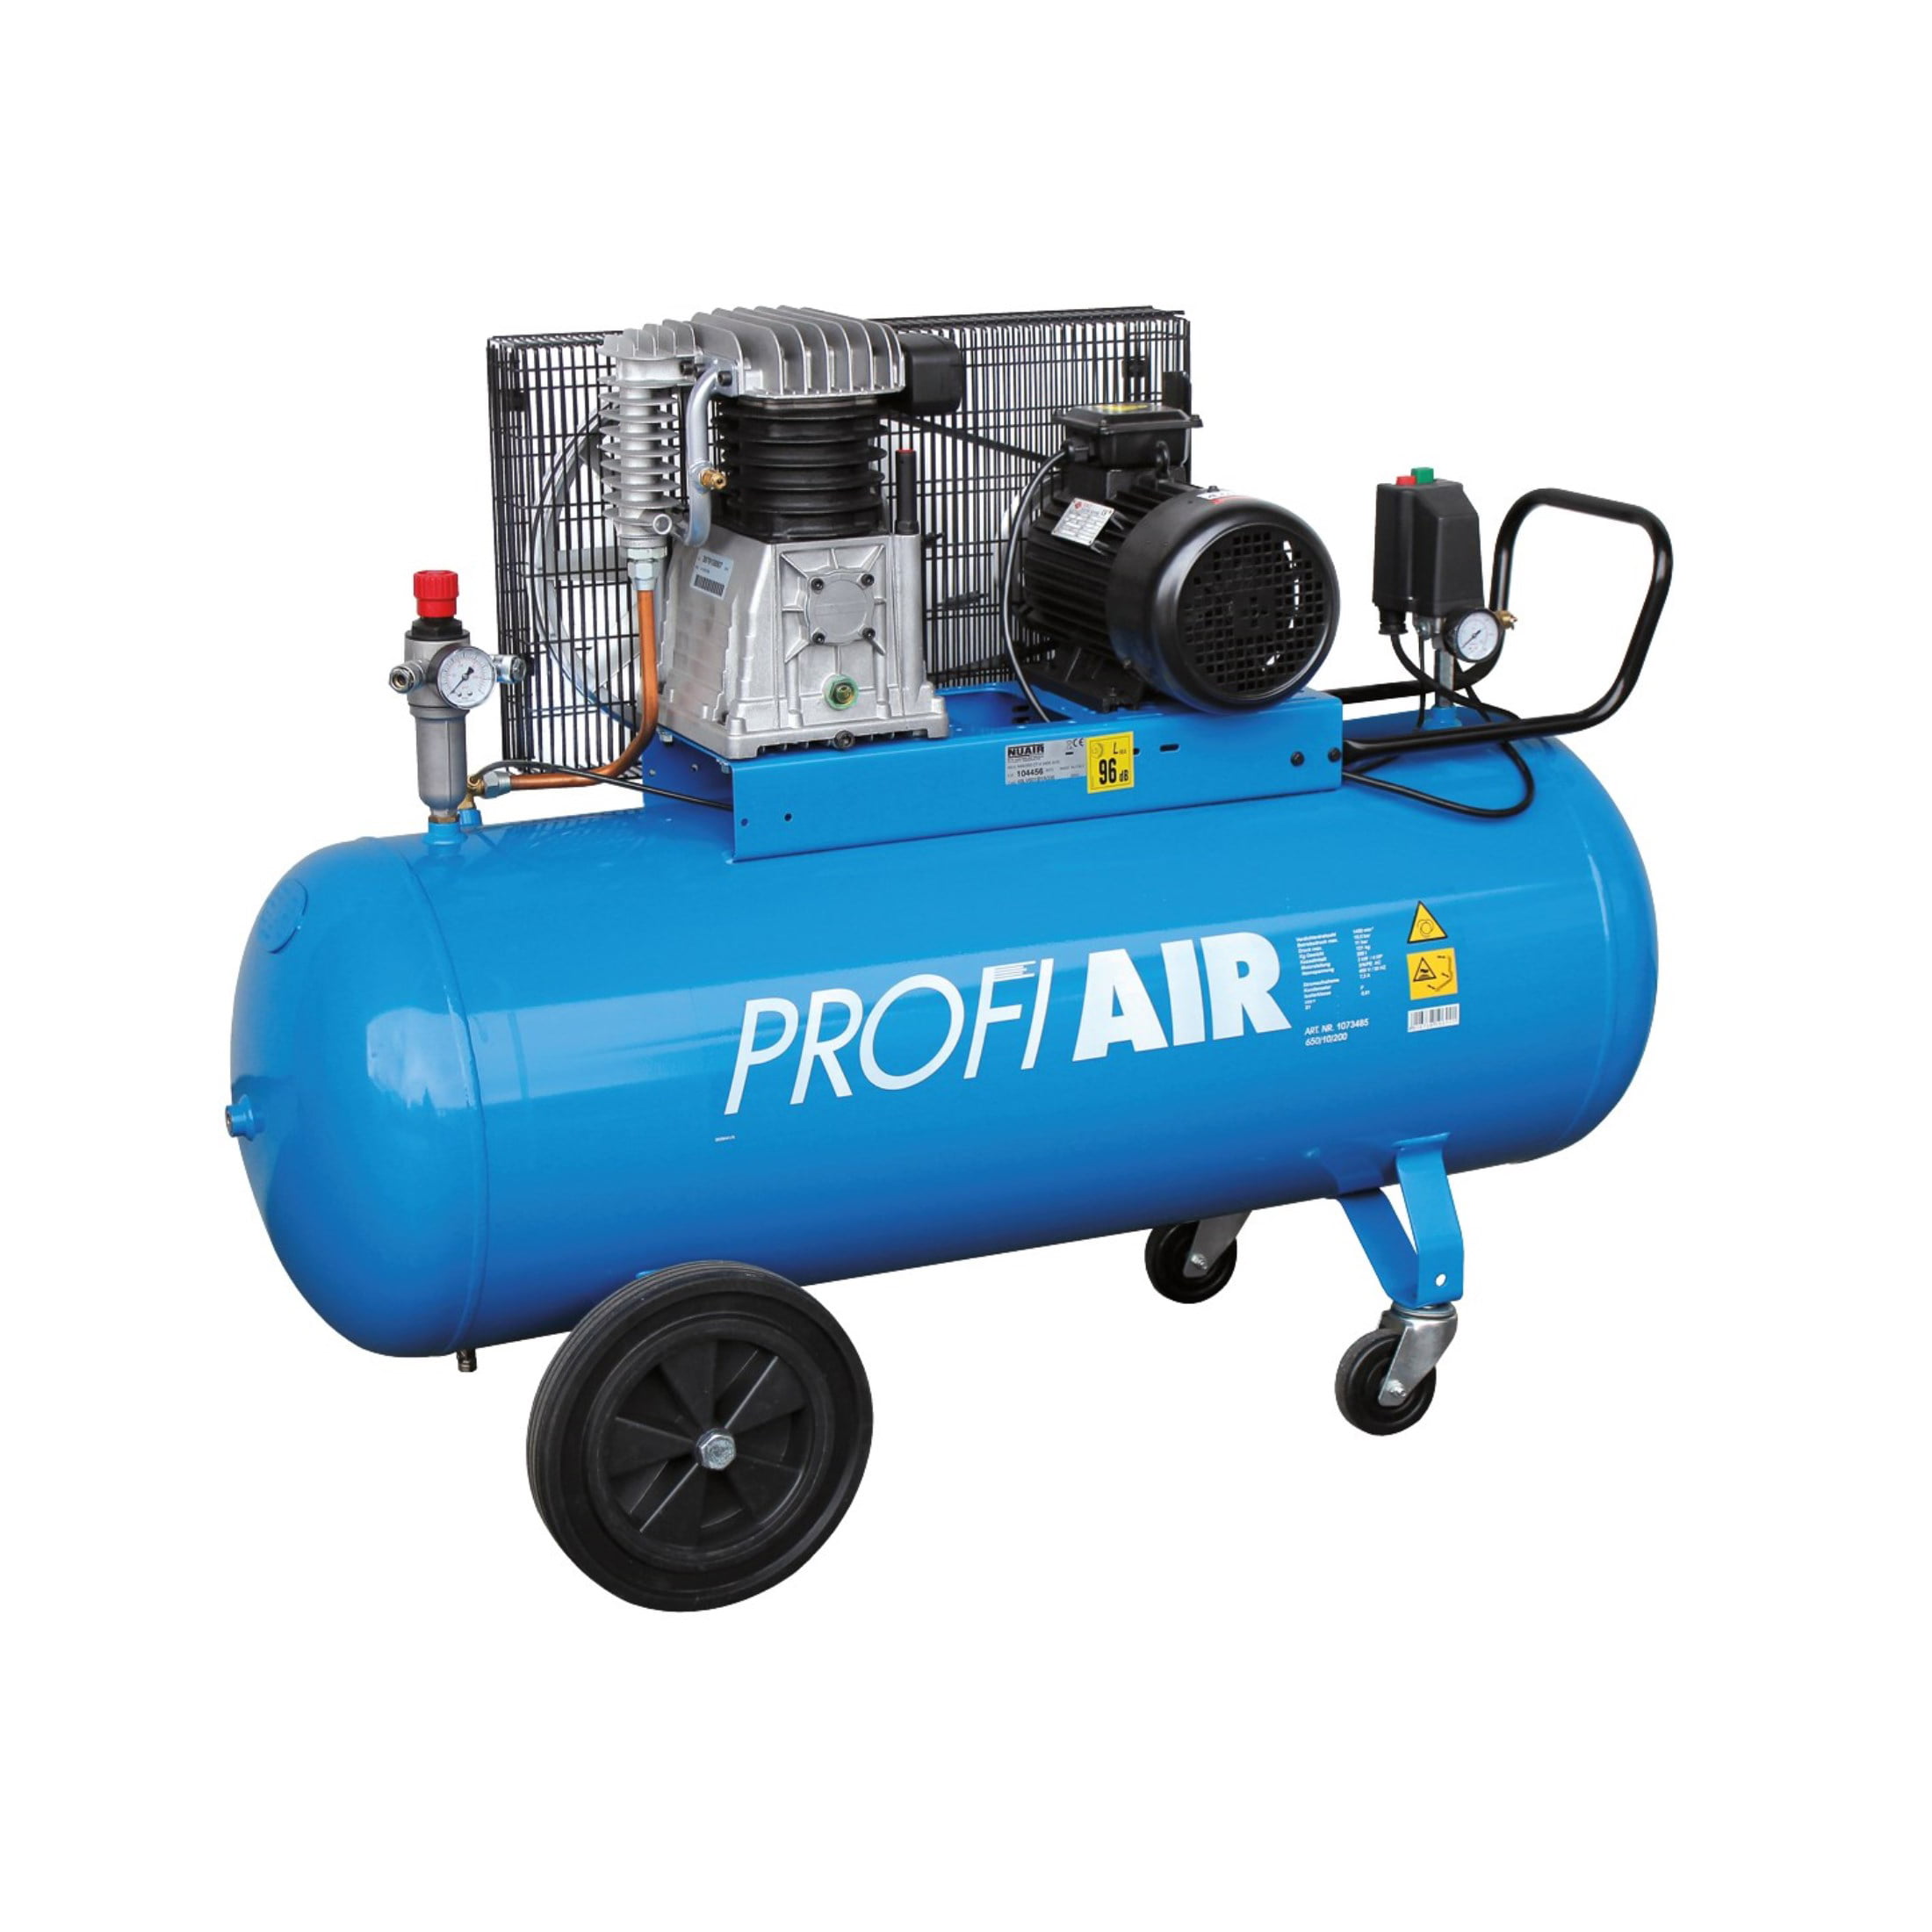 Profi Air trofazni kompresor za vazduh zrak 650/10/200 200L -  masineialati.ba - Profesionalni i hobi alati i mašine